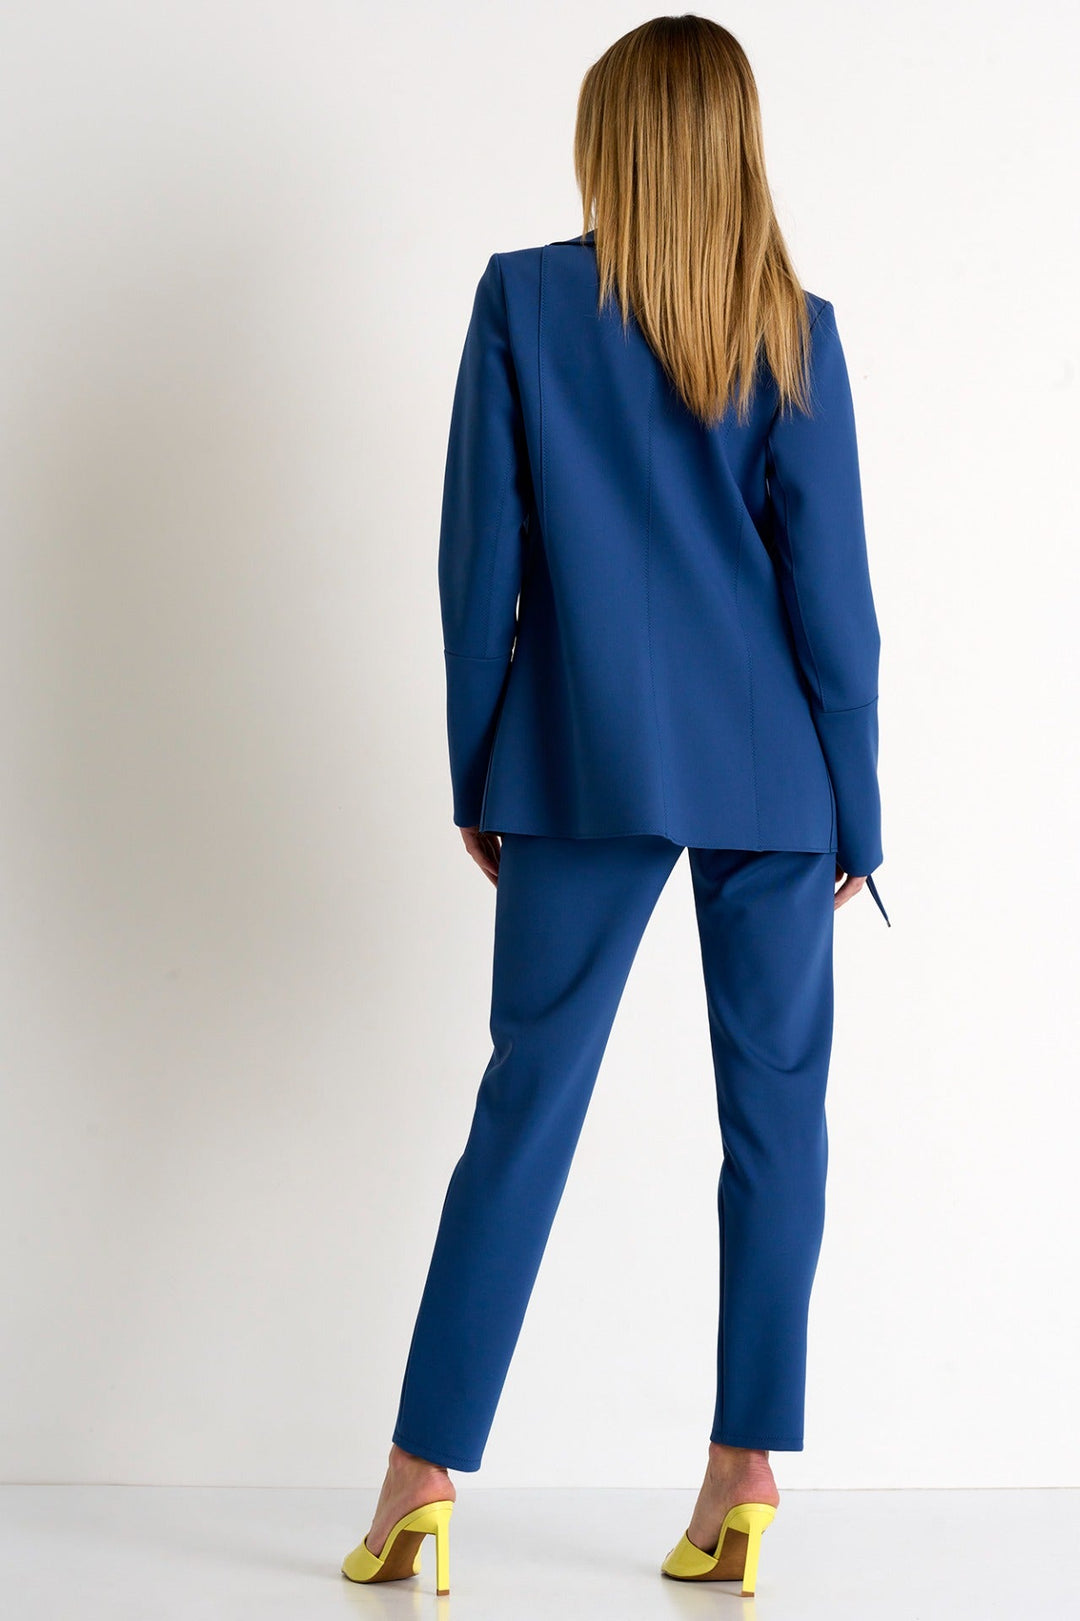 Straight Fit Trouser - 52327-51-530 02 / 530 Californian Blue / 75% POLYAMIDE, 25% ELASTANE